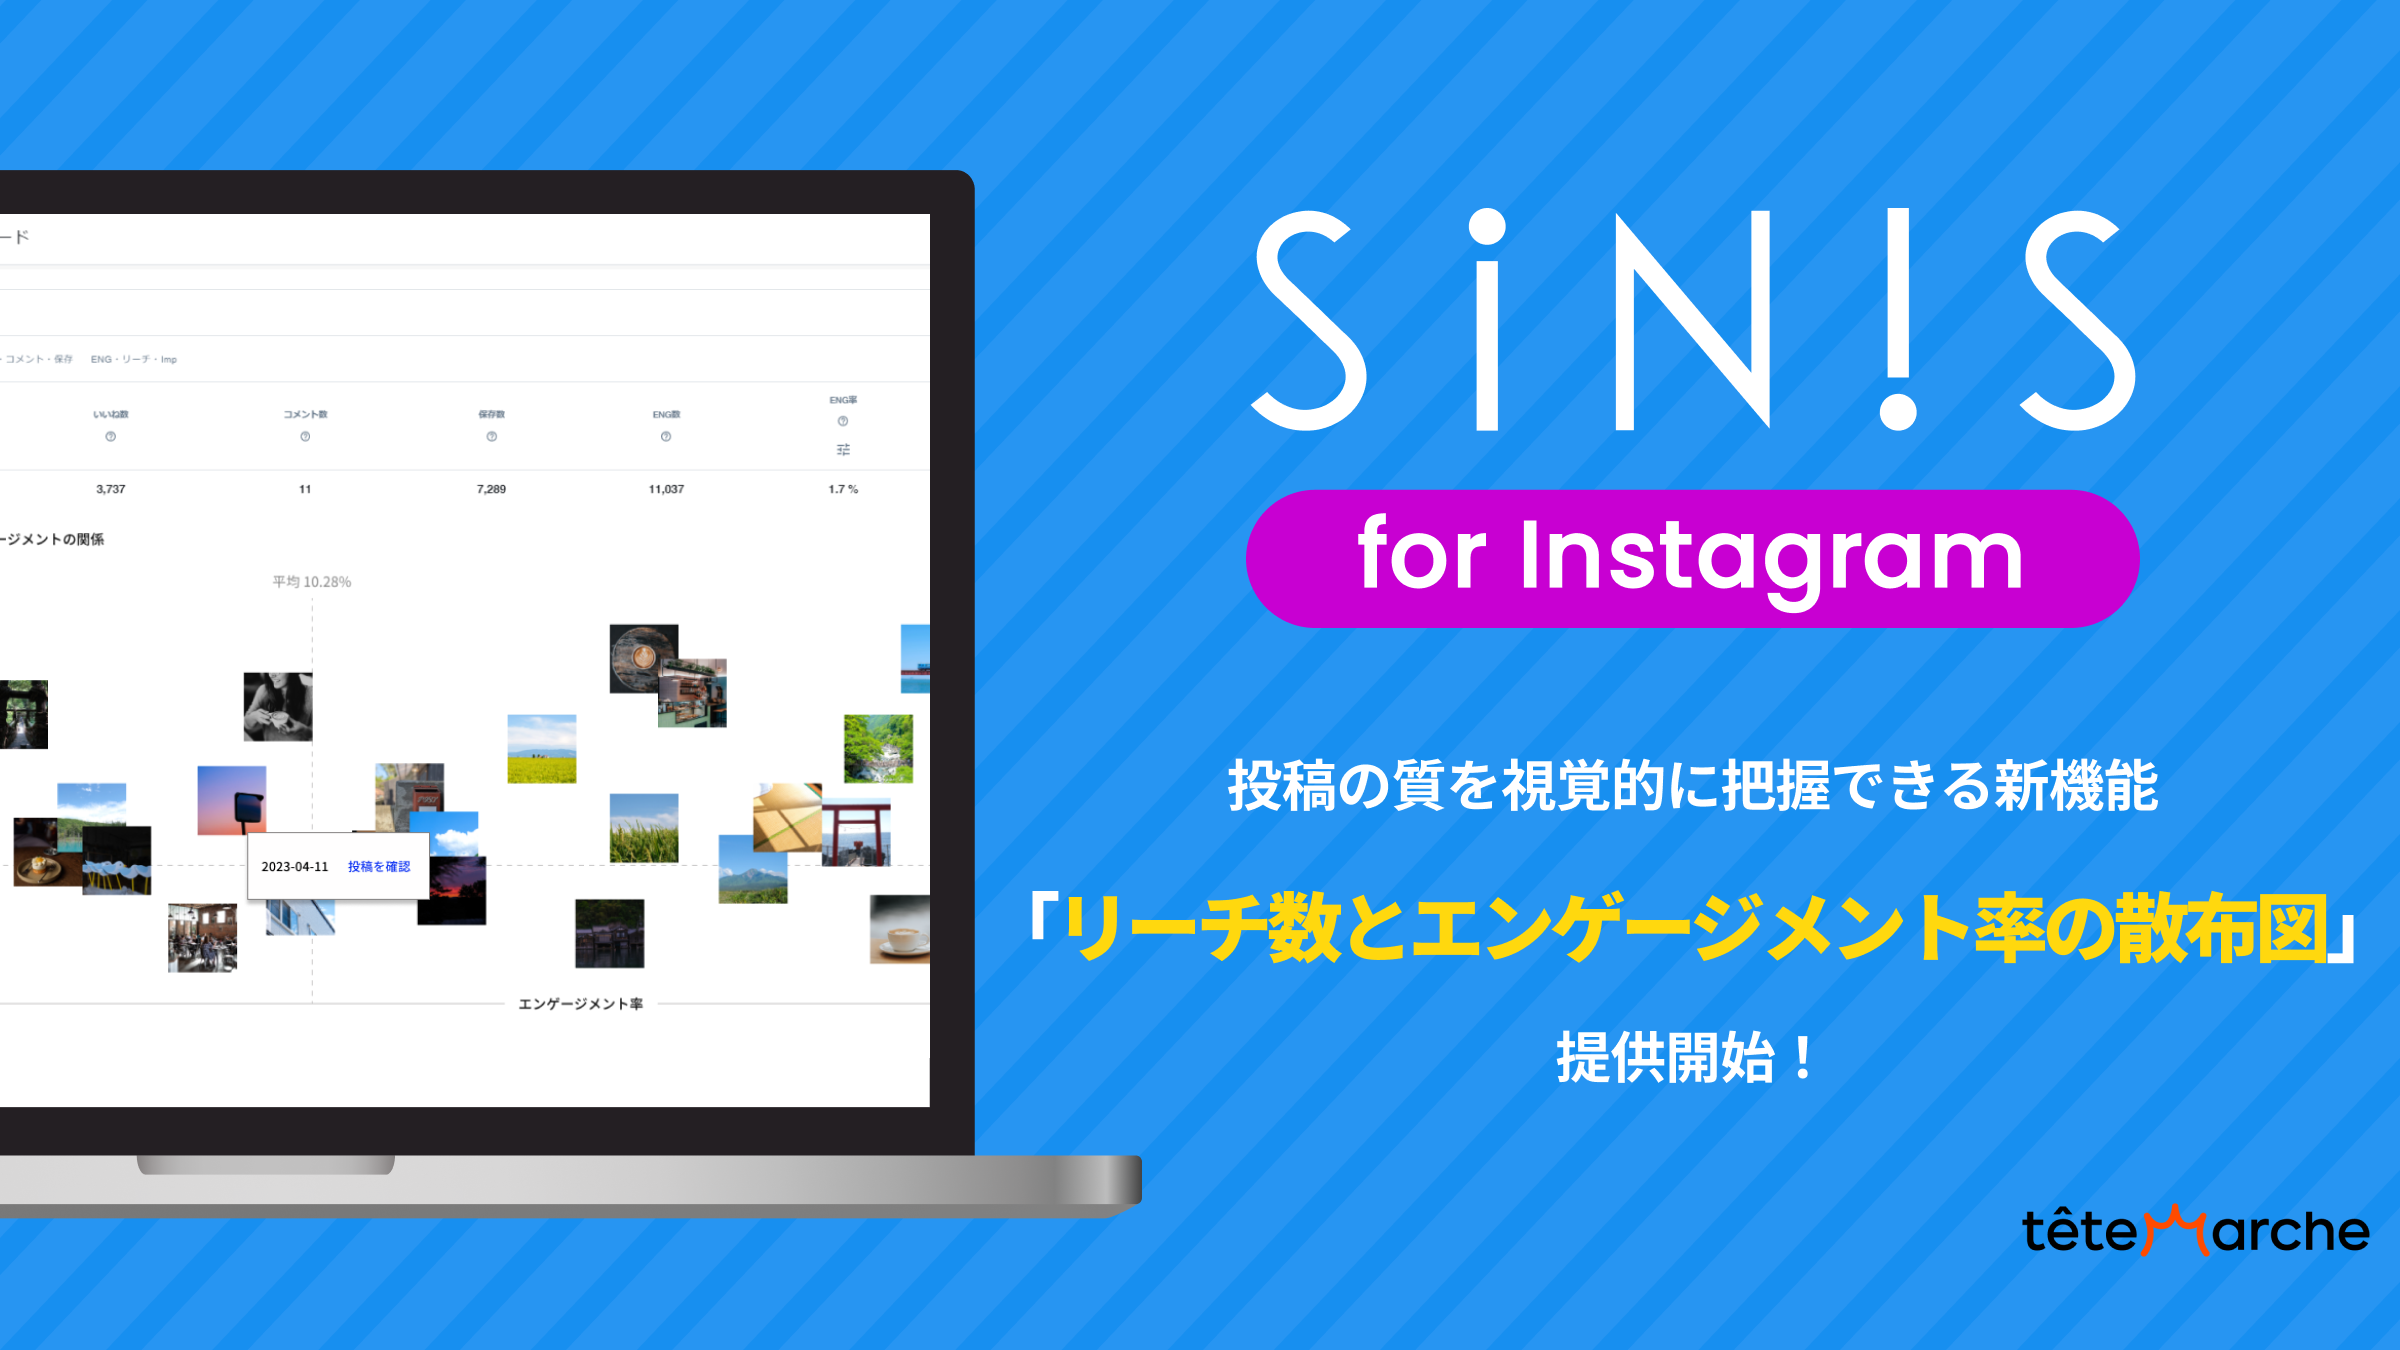 Instagram分析ツール「SINIS for Instagram」リーチ数とエンゲージメント率の散布図を提供開始